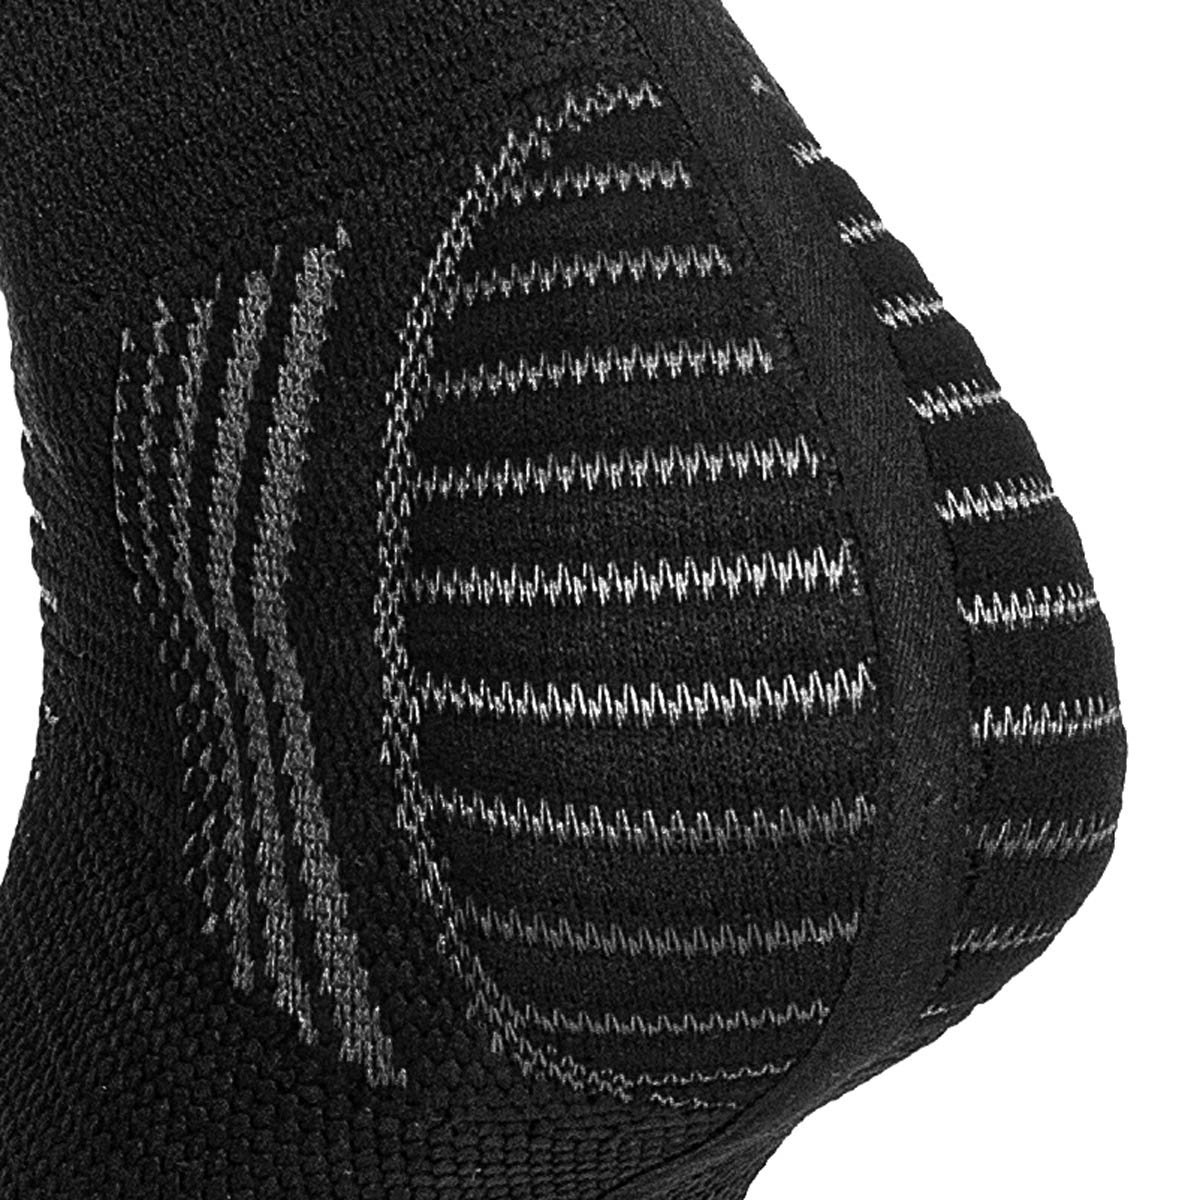 Tornozeleira de Compressão Sense Knit 3D Alasca:Preto/P/Unissex - 6